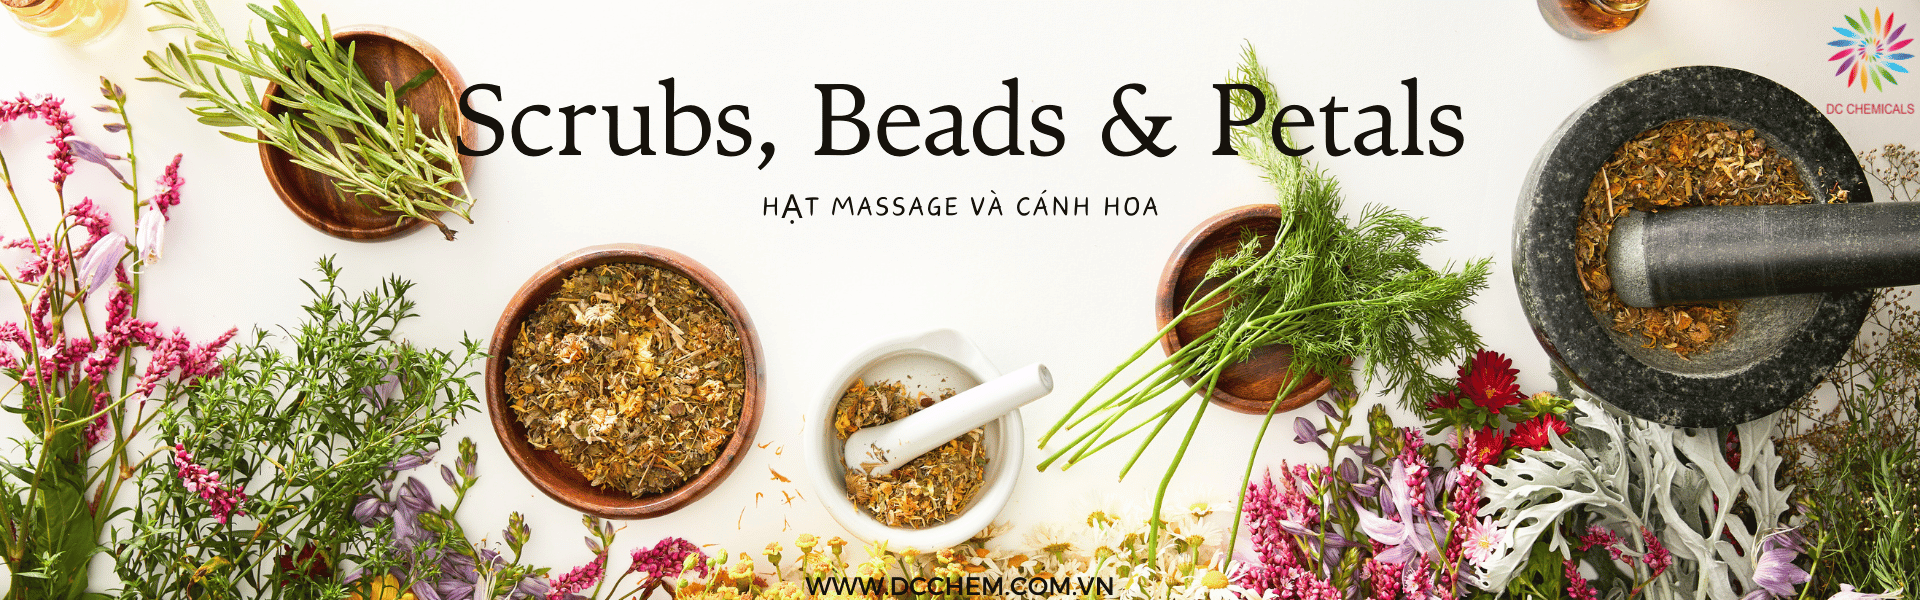 Hạt massage và cánh hoa - Scrubs & beads & Petals